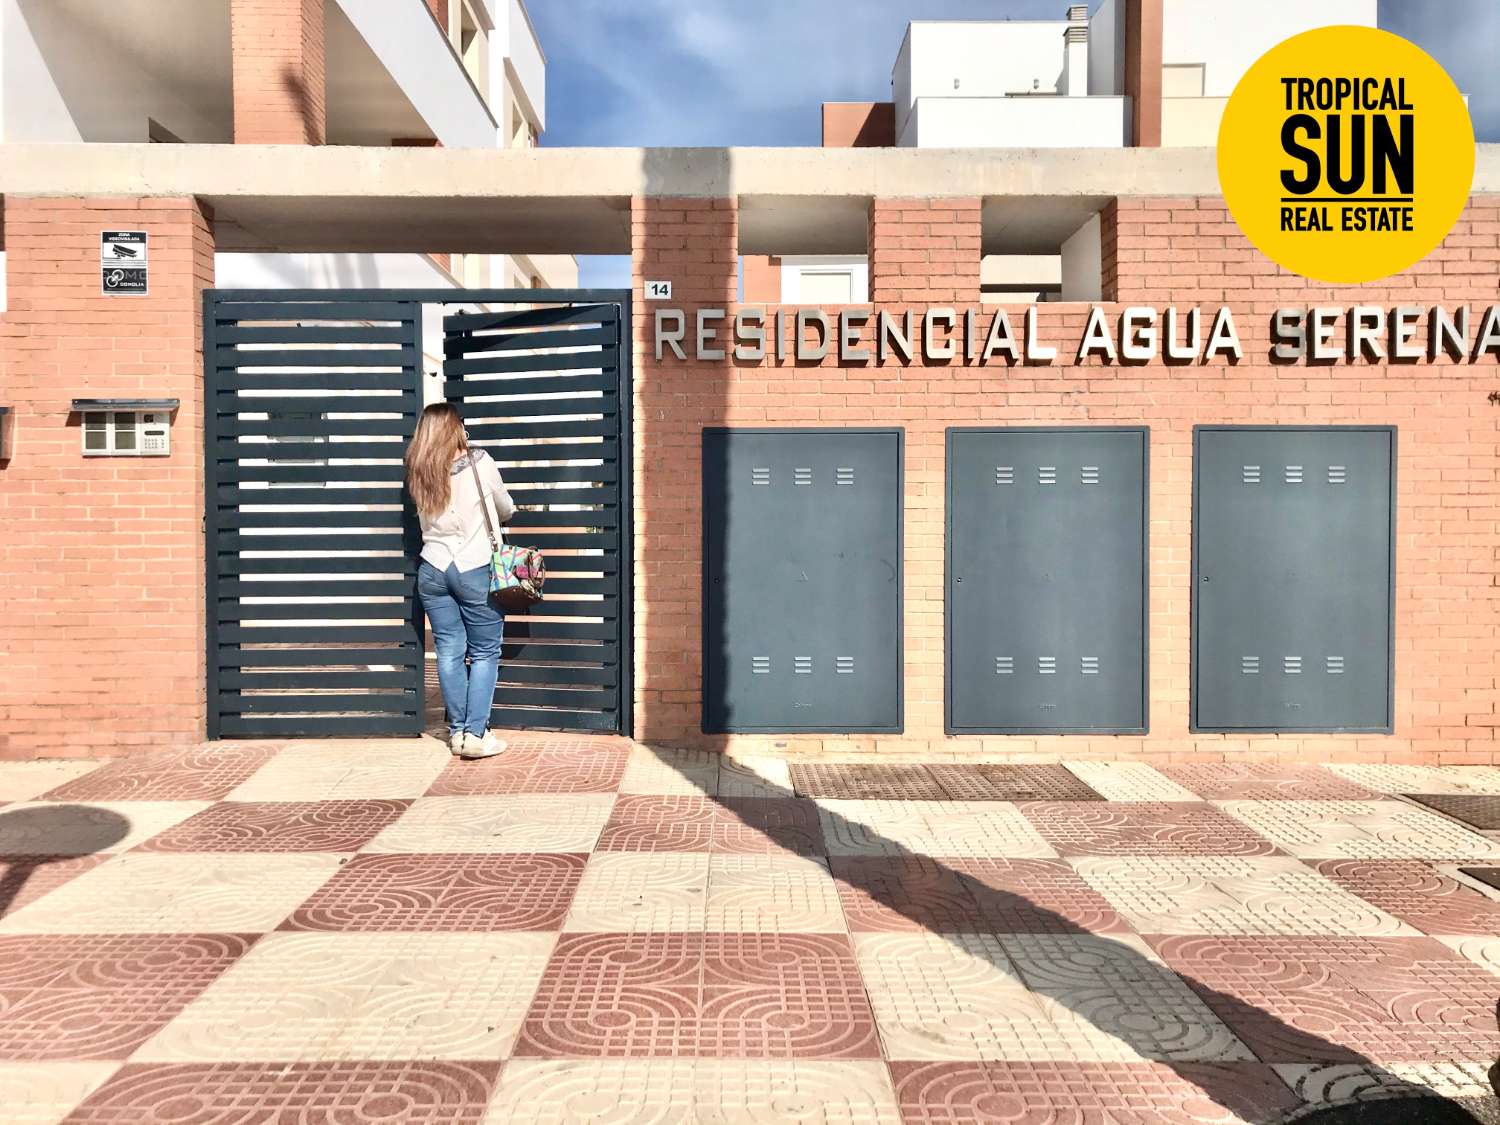 Découvrez le paradis à Roquetas de Mar : Belle maison de 3 chambres dans le quartier résidentiel d'Aguaserena